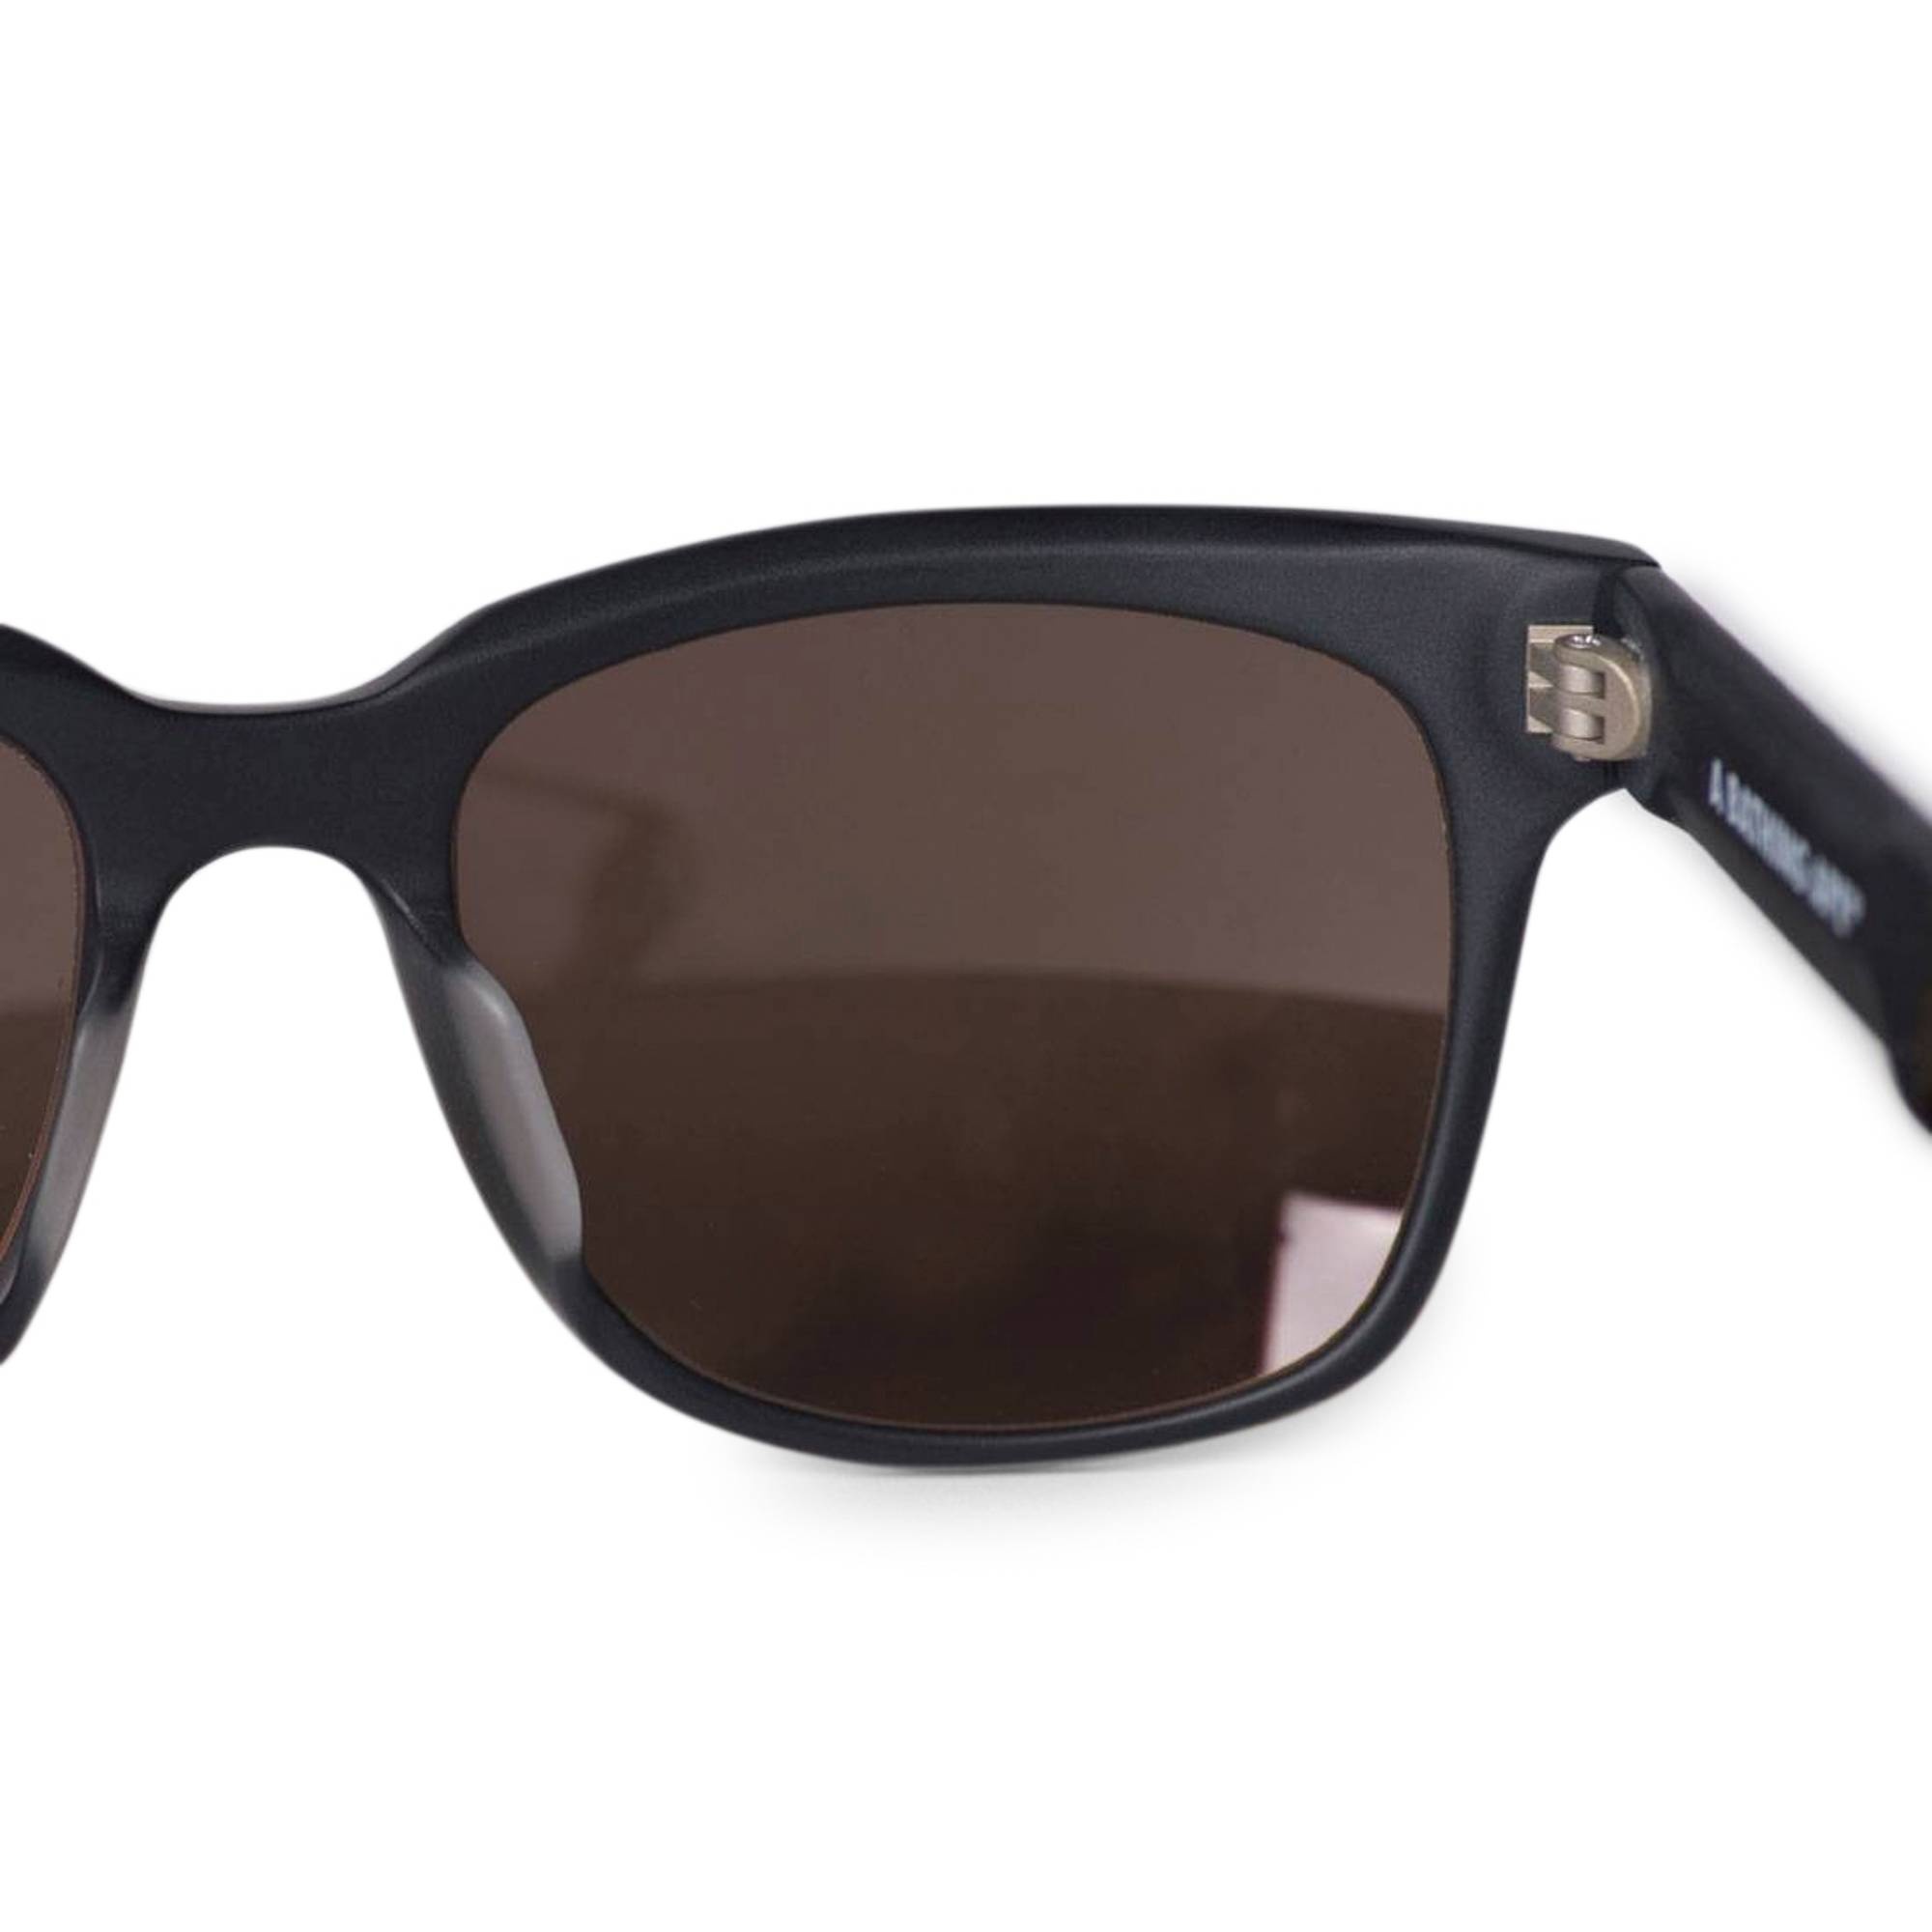 BAPE Sunglasses 'Black/Matte Black' - 3